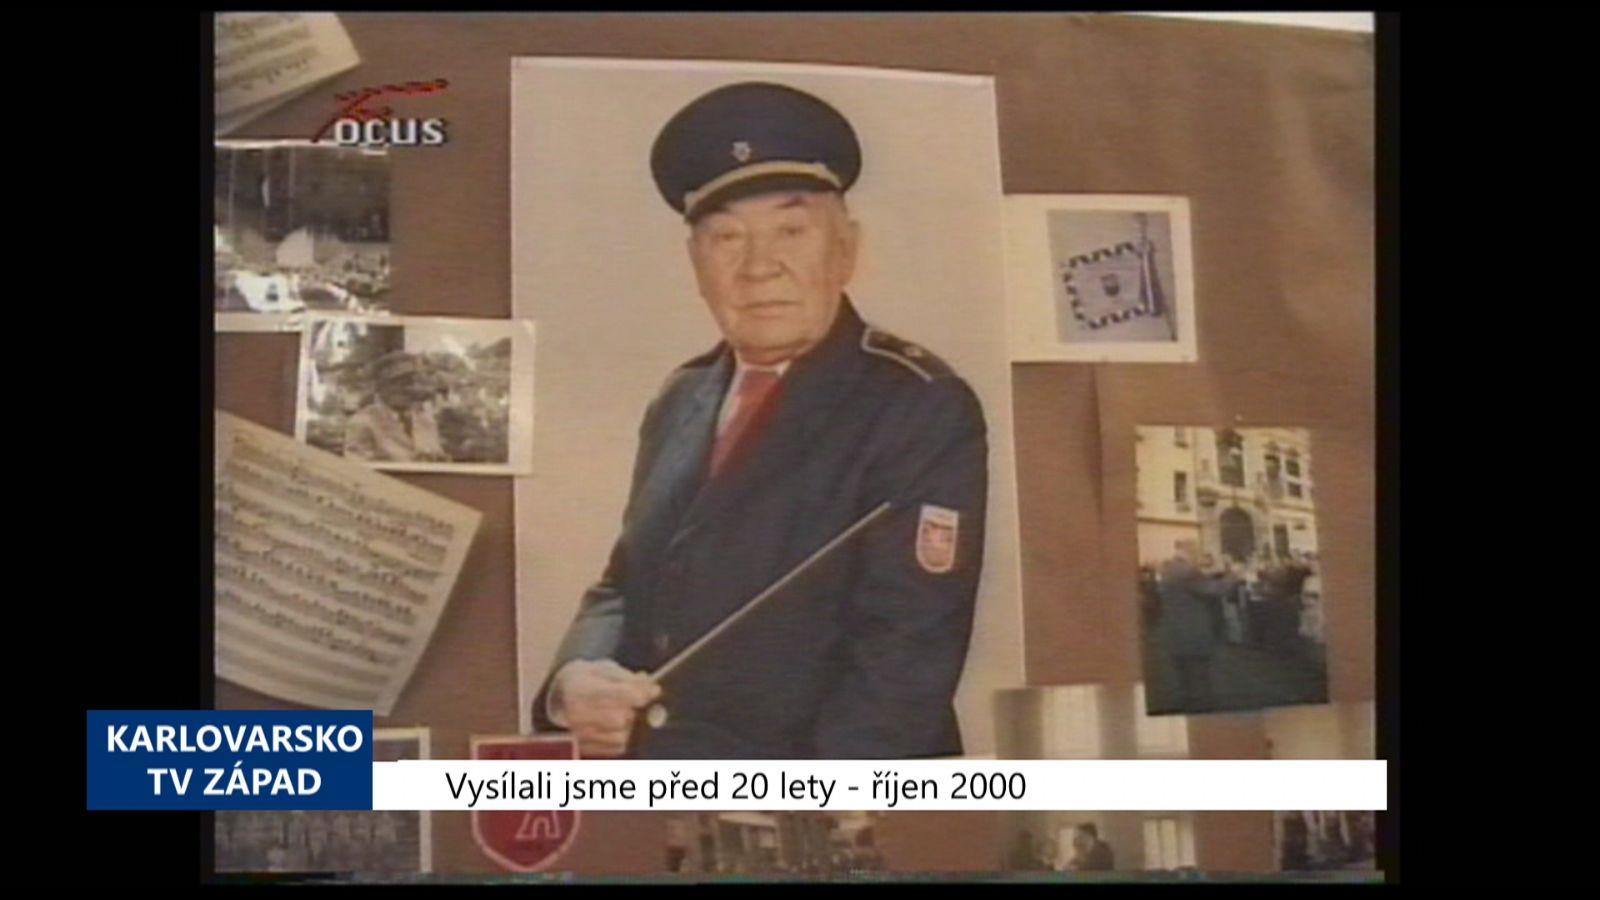 2000 – Cheb: Hudebníci vzpomínali na tátu Kučeru (TV Západ)